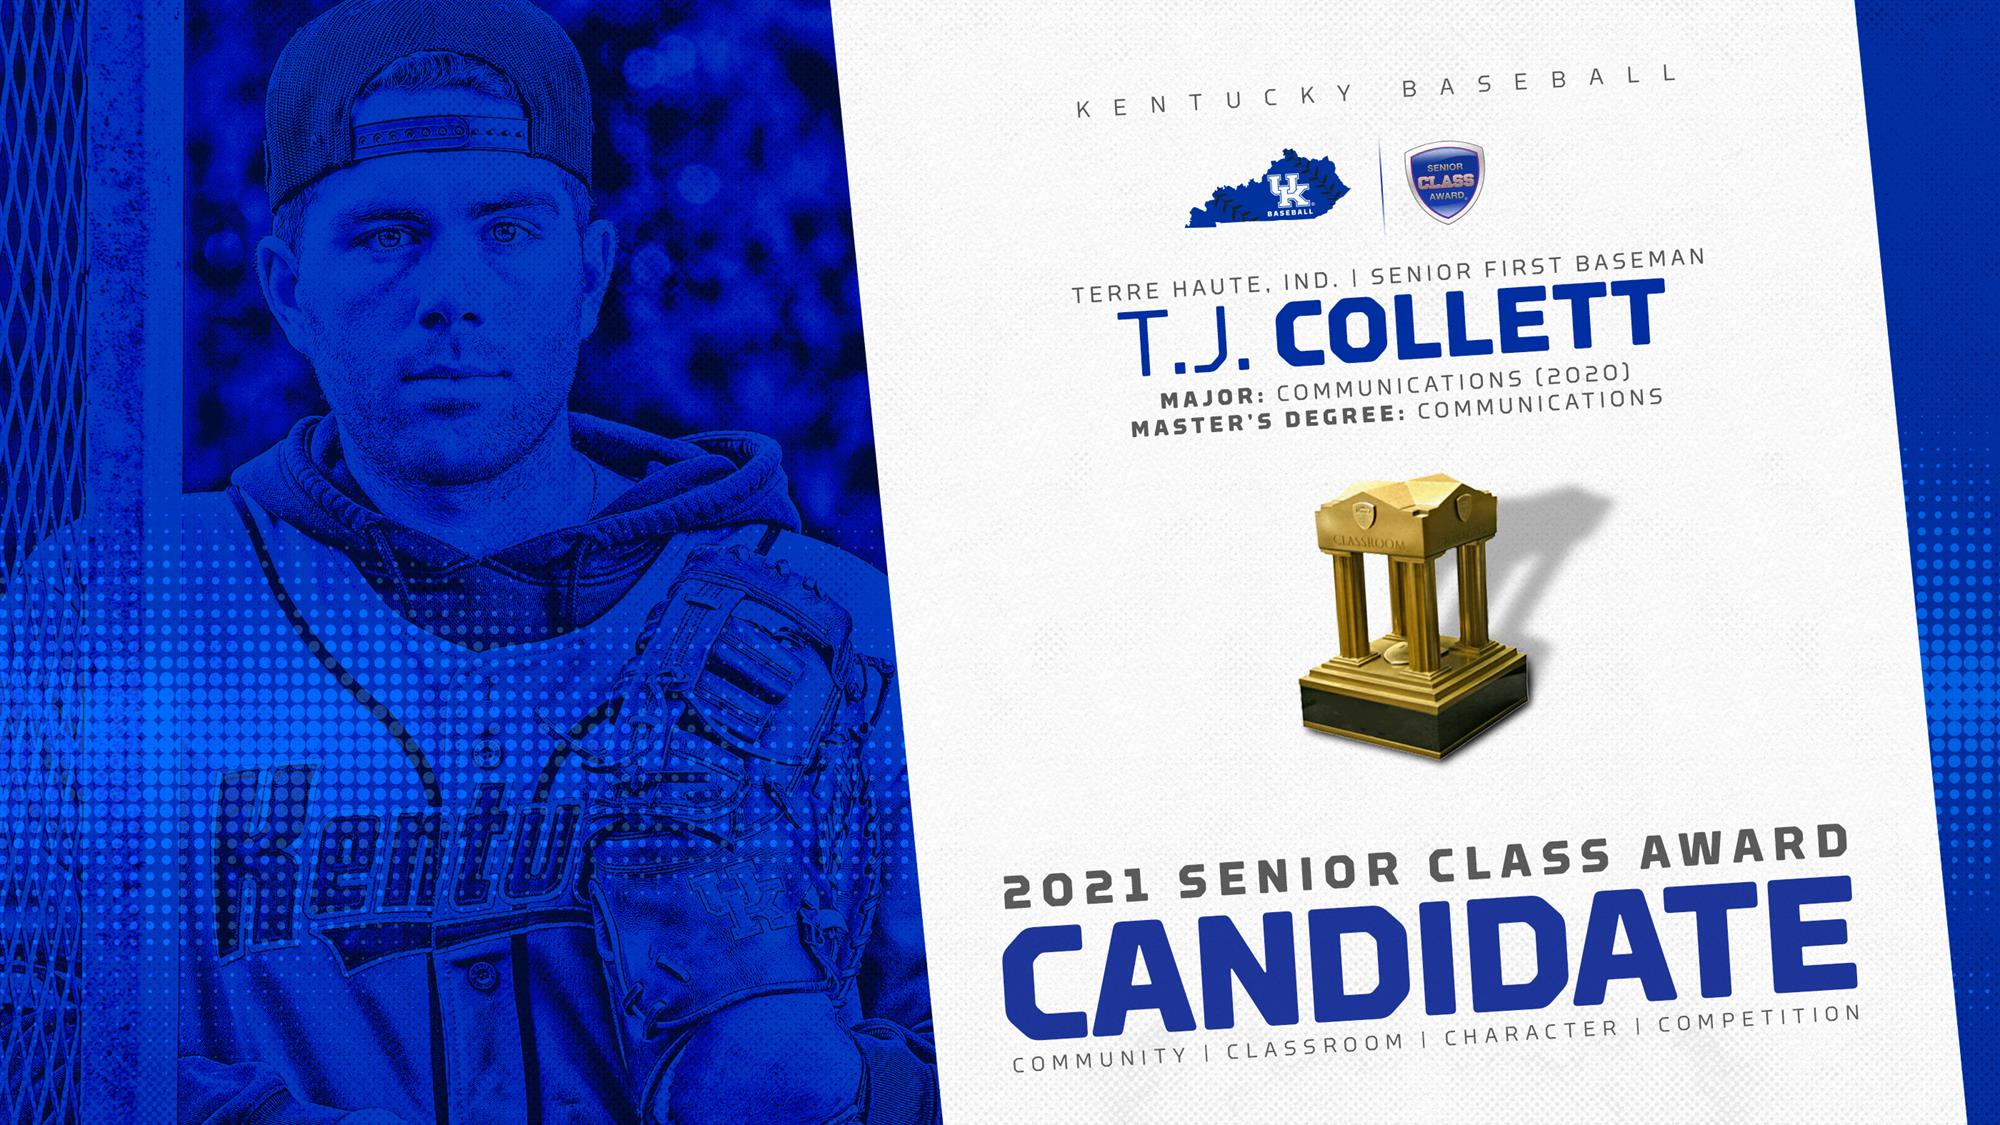 T.J. Collett Named Candidate for 2021 Senior CLASS Award